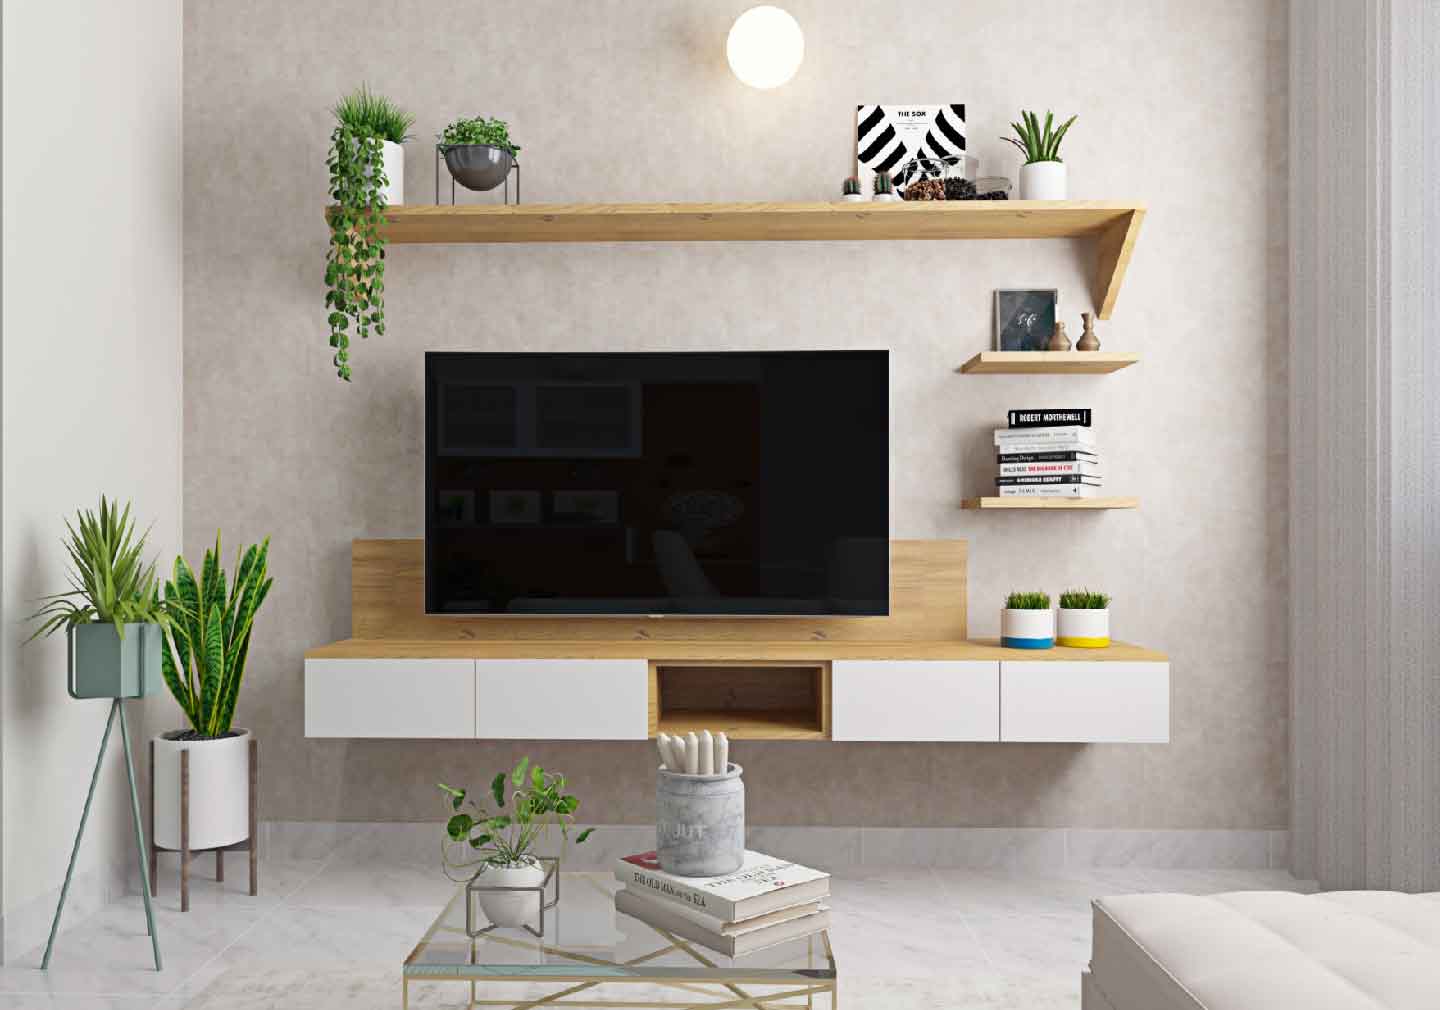 The TV Unit - Living room interior design